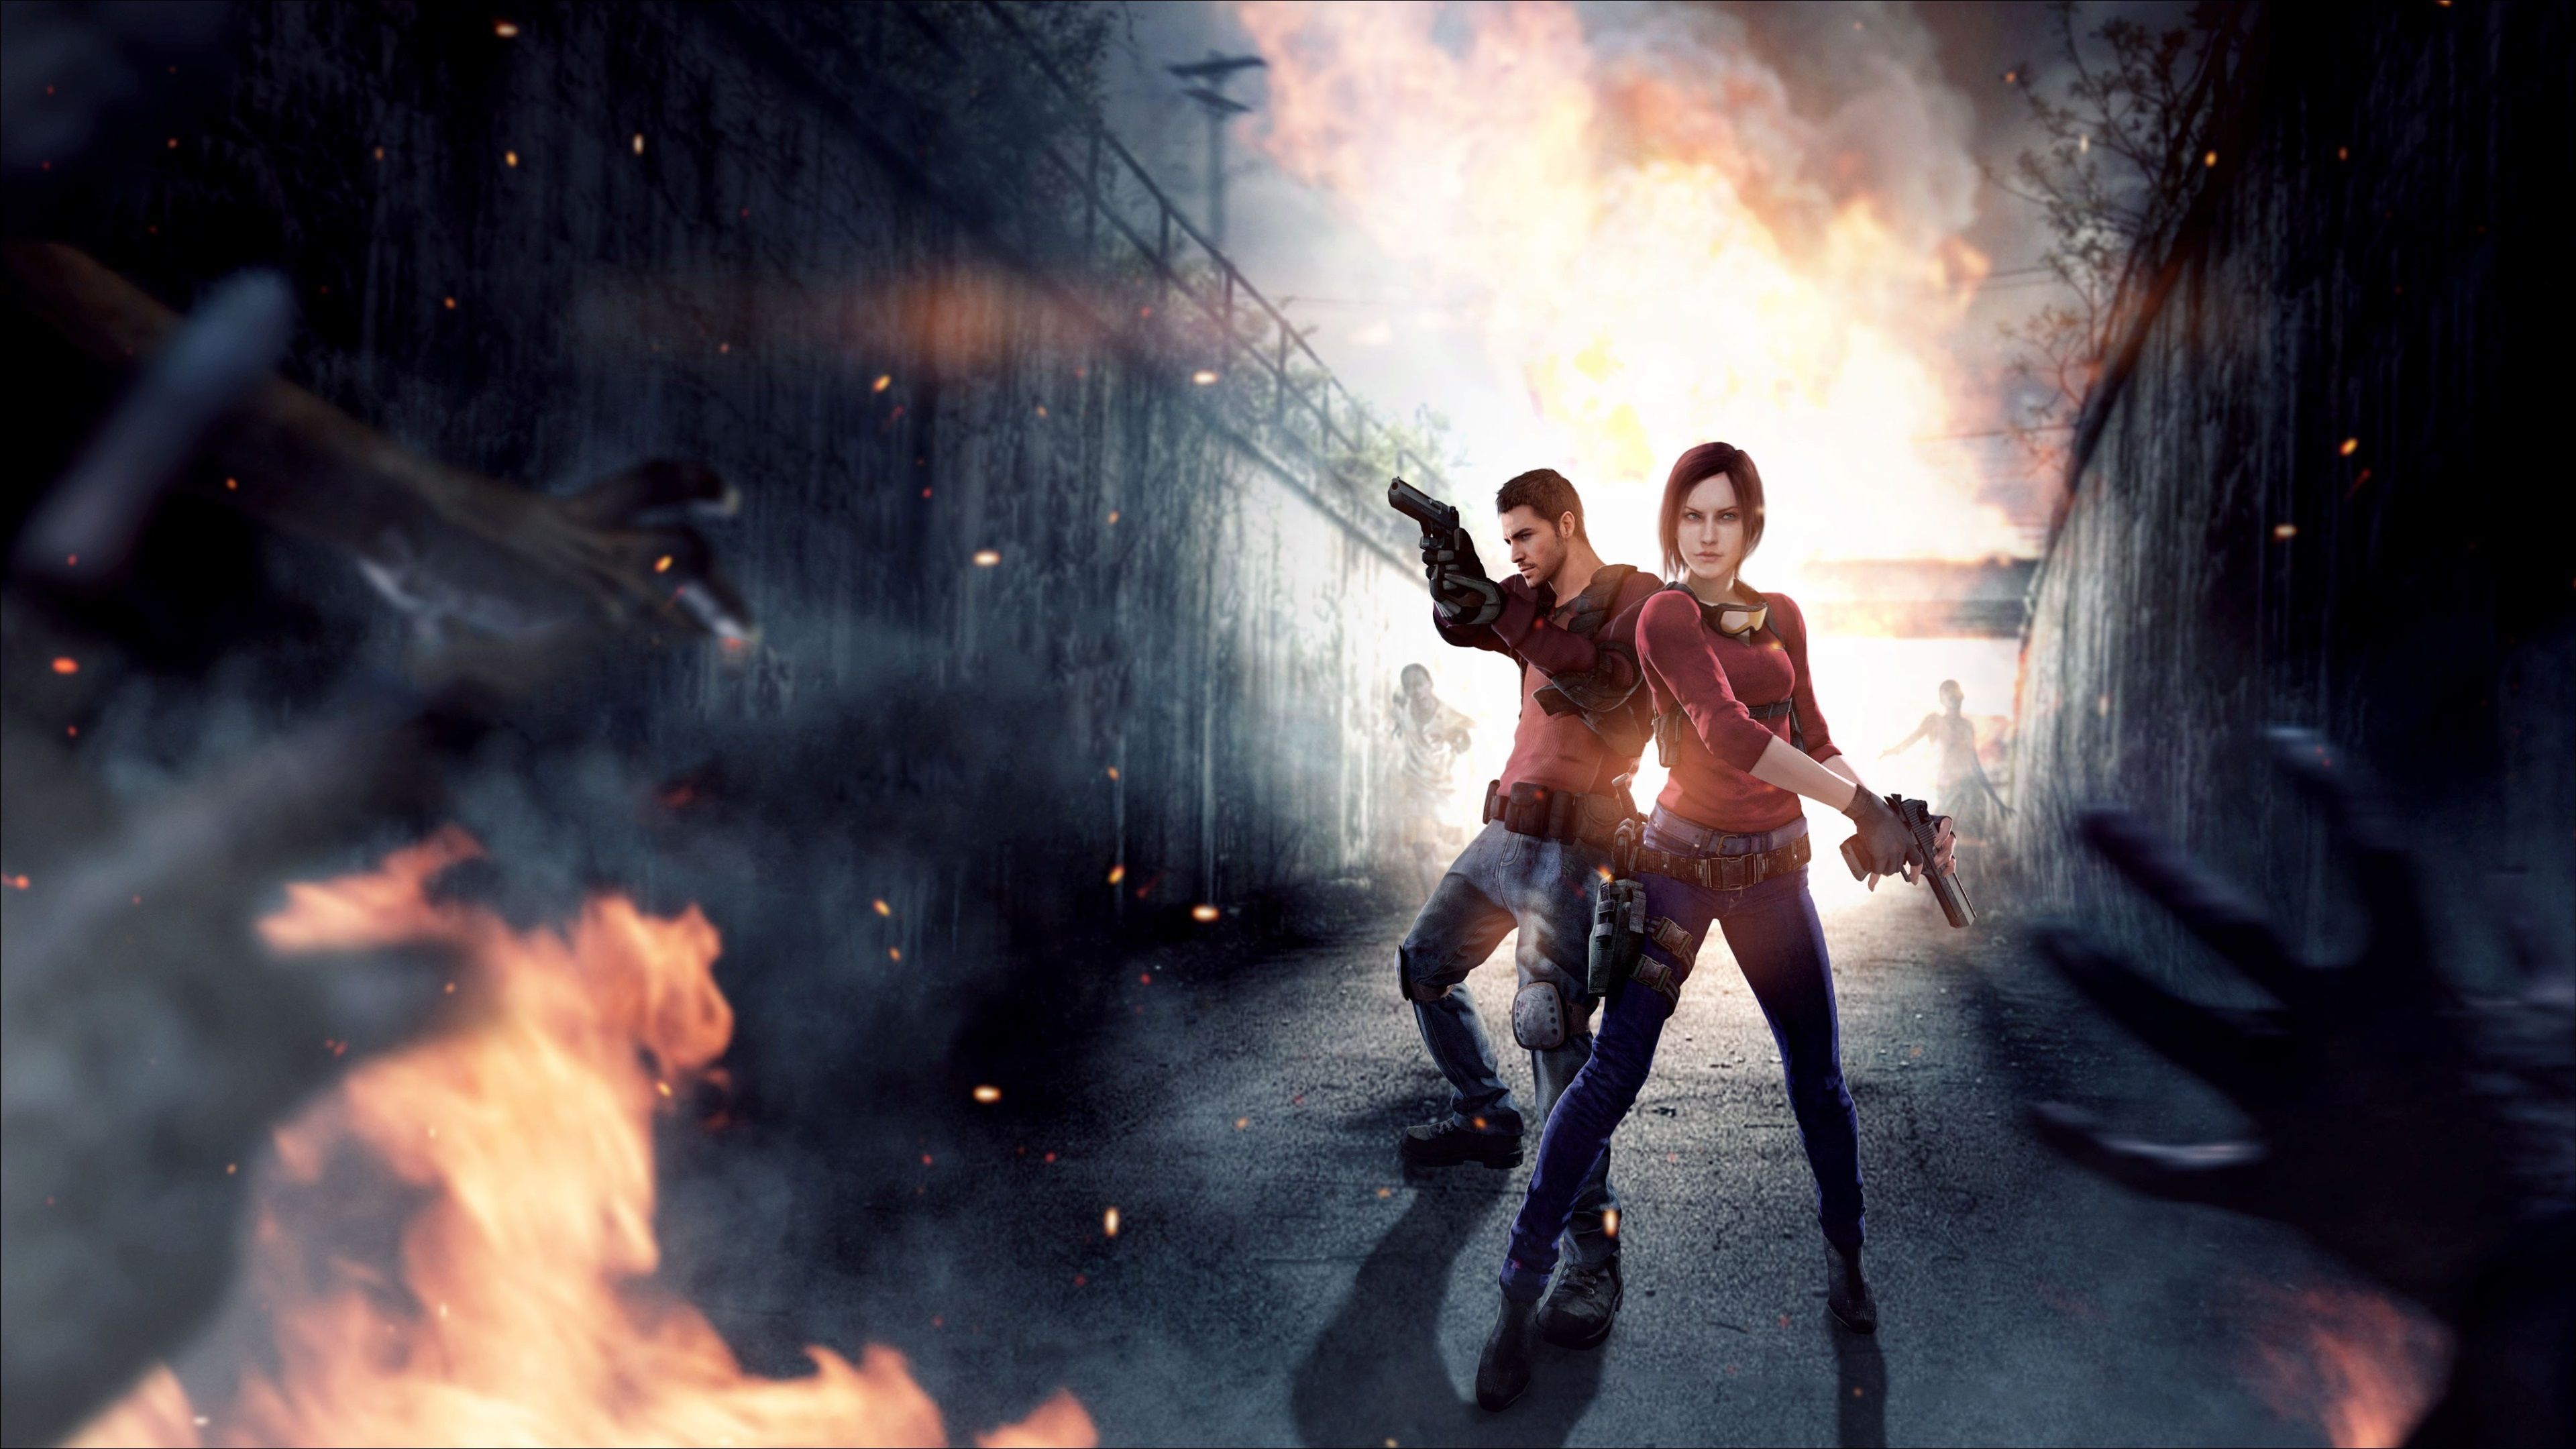 resident evil 7 4k new HD pc wallpaper. Resident evil, Resident evil game, Resident evil 5